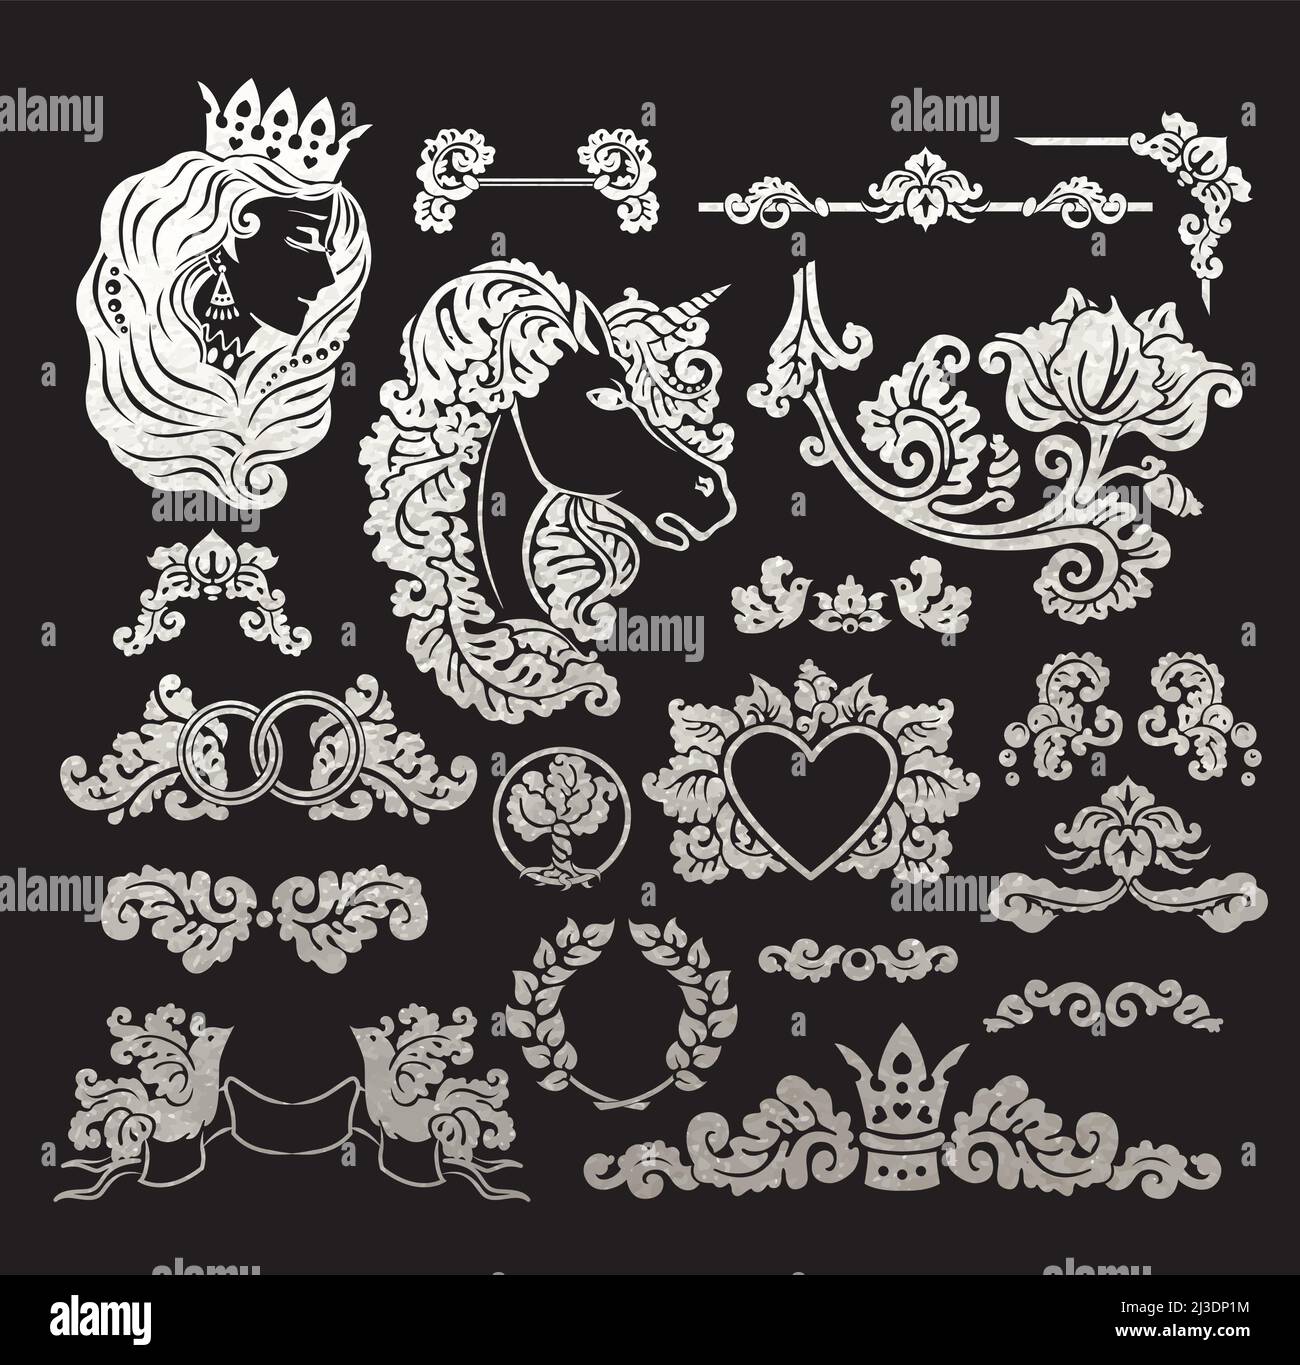 Vector königliche Hochzeitsvignetten im mittelalterlichen Dekorationsstil - Elemente für Vintage-Dekorationsdesign - Embleme aus realistischer Metallic-Seide geschnitten Stock Vektor